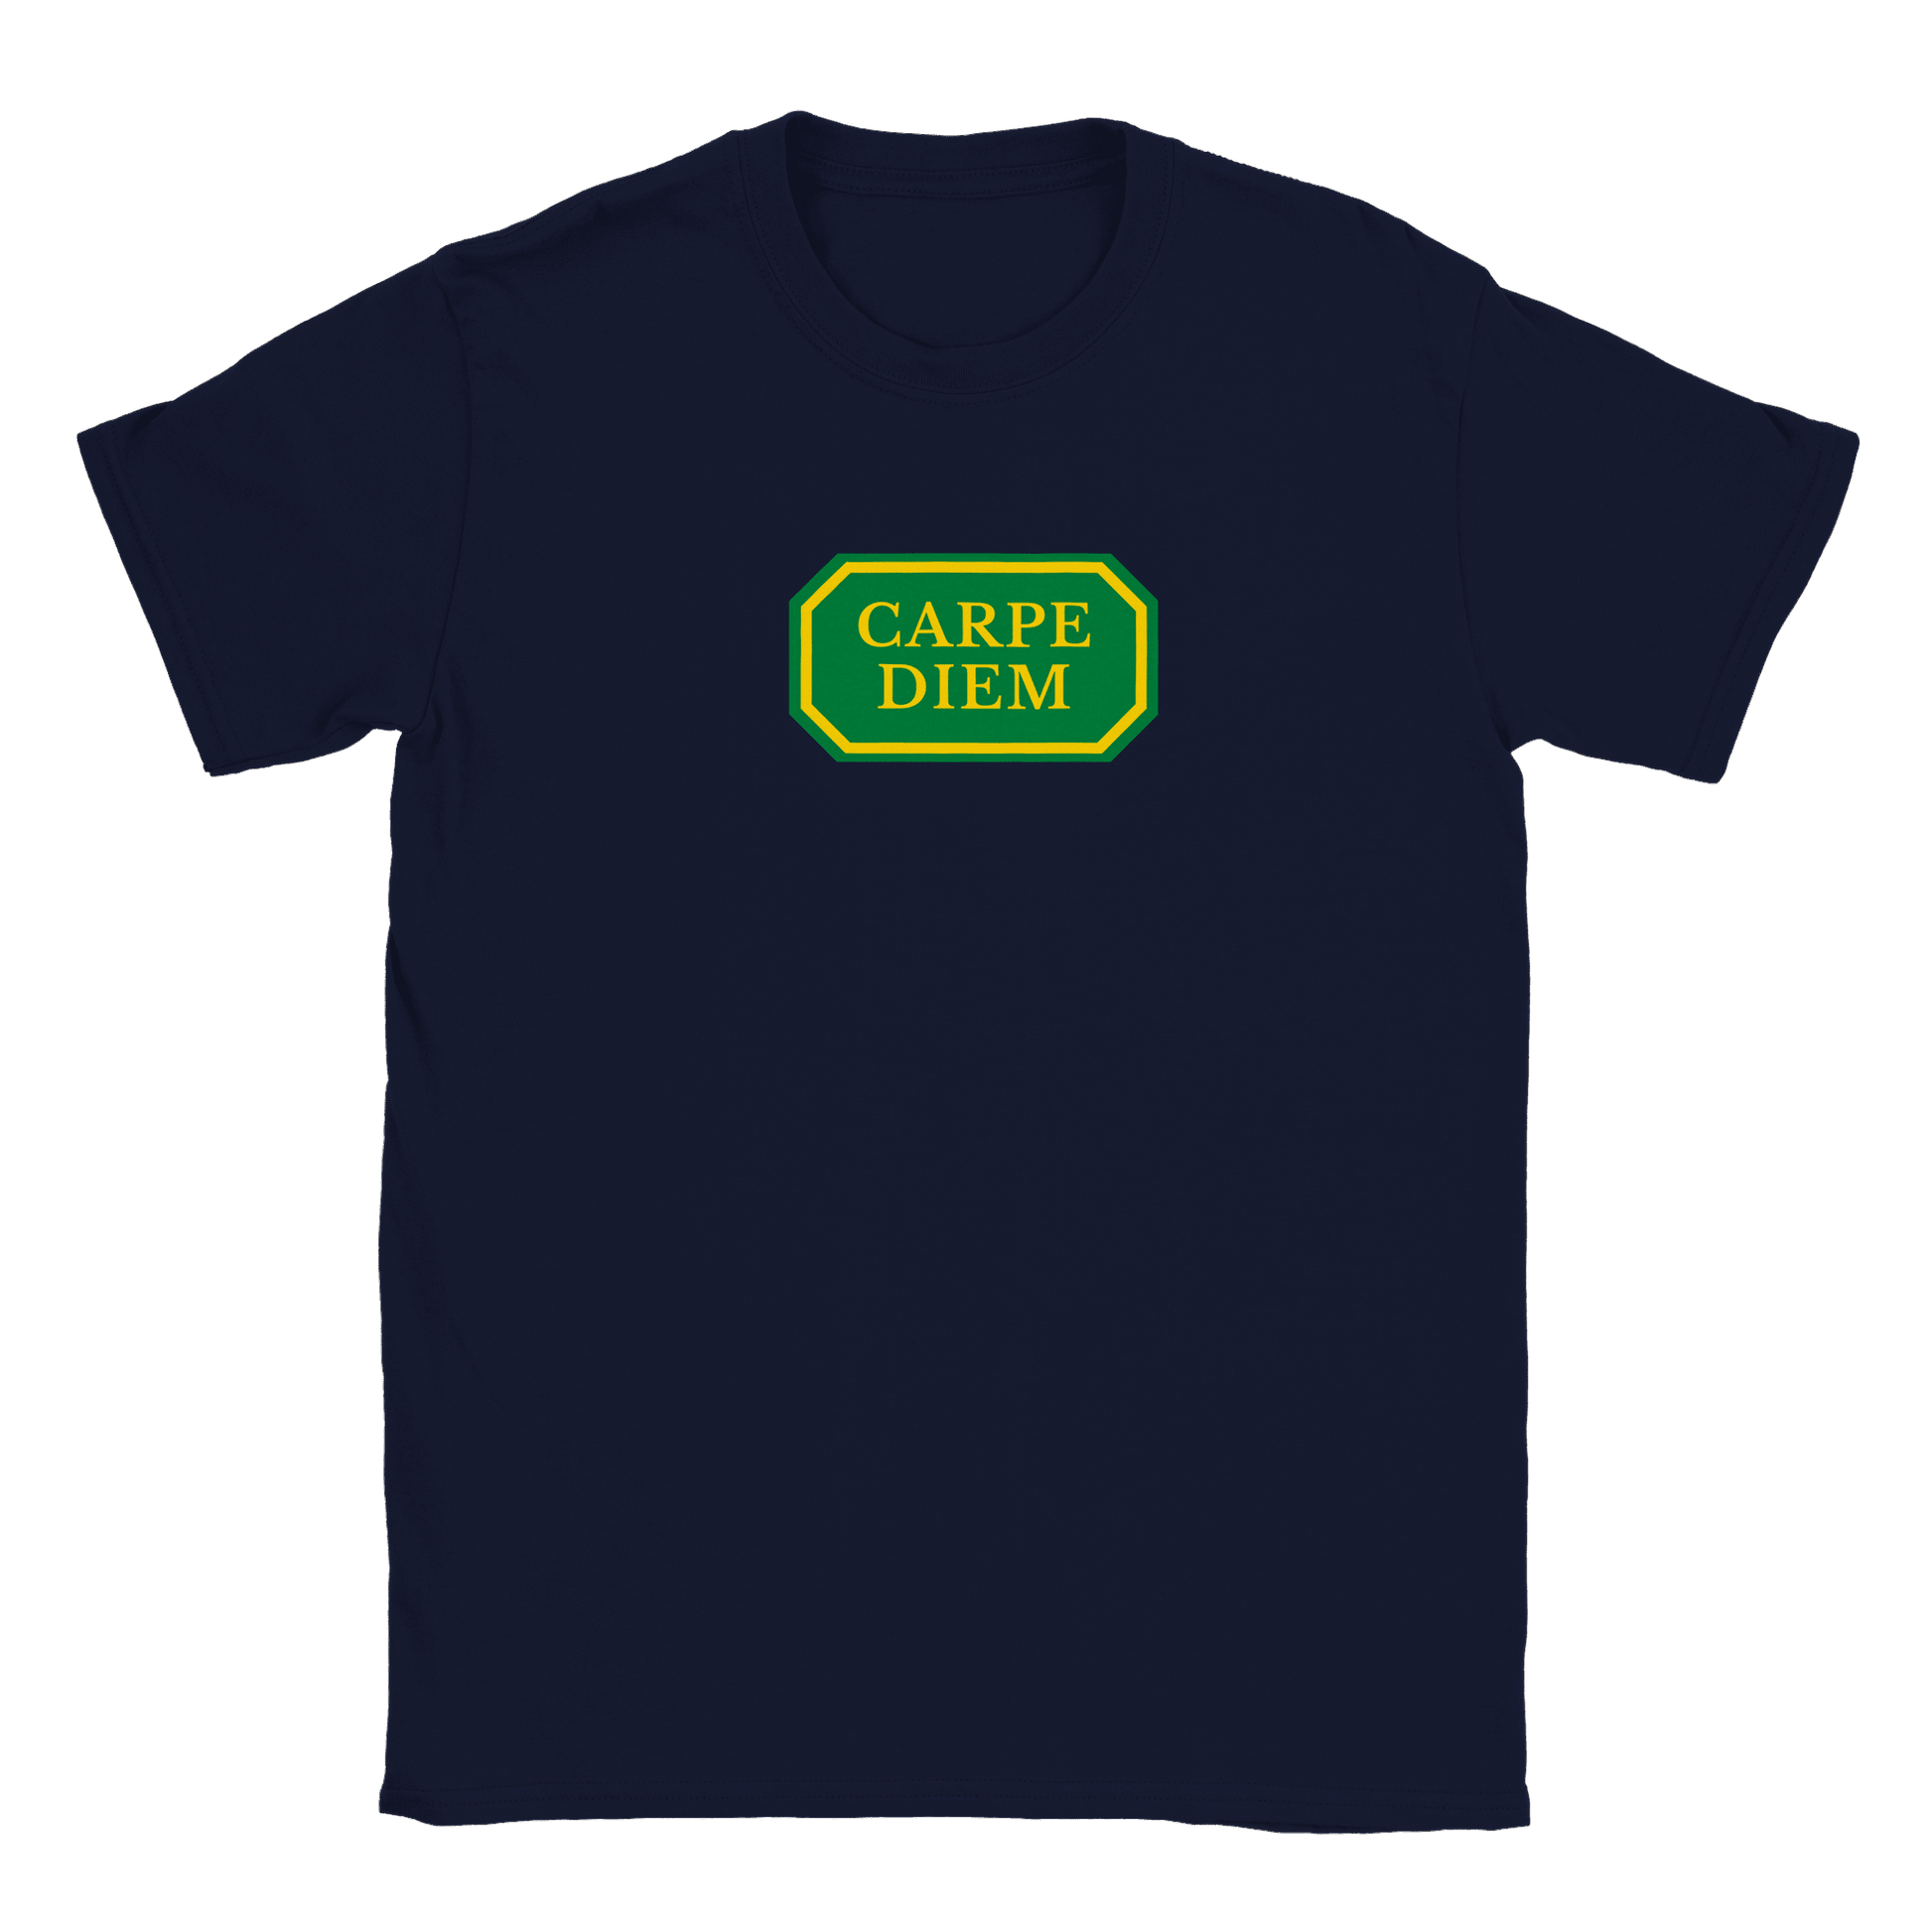 Carpe Diem - T-shirt Navy